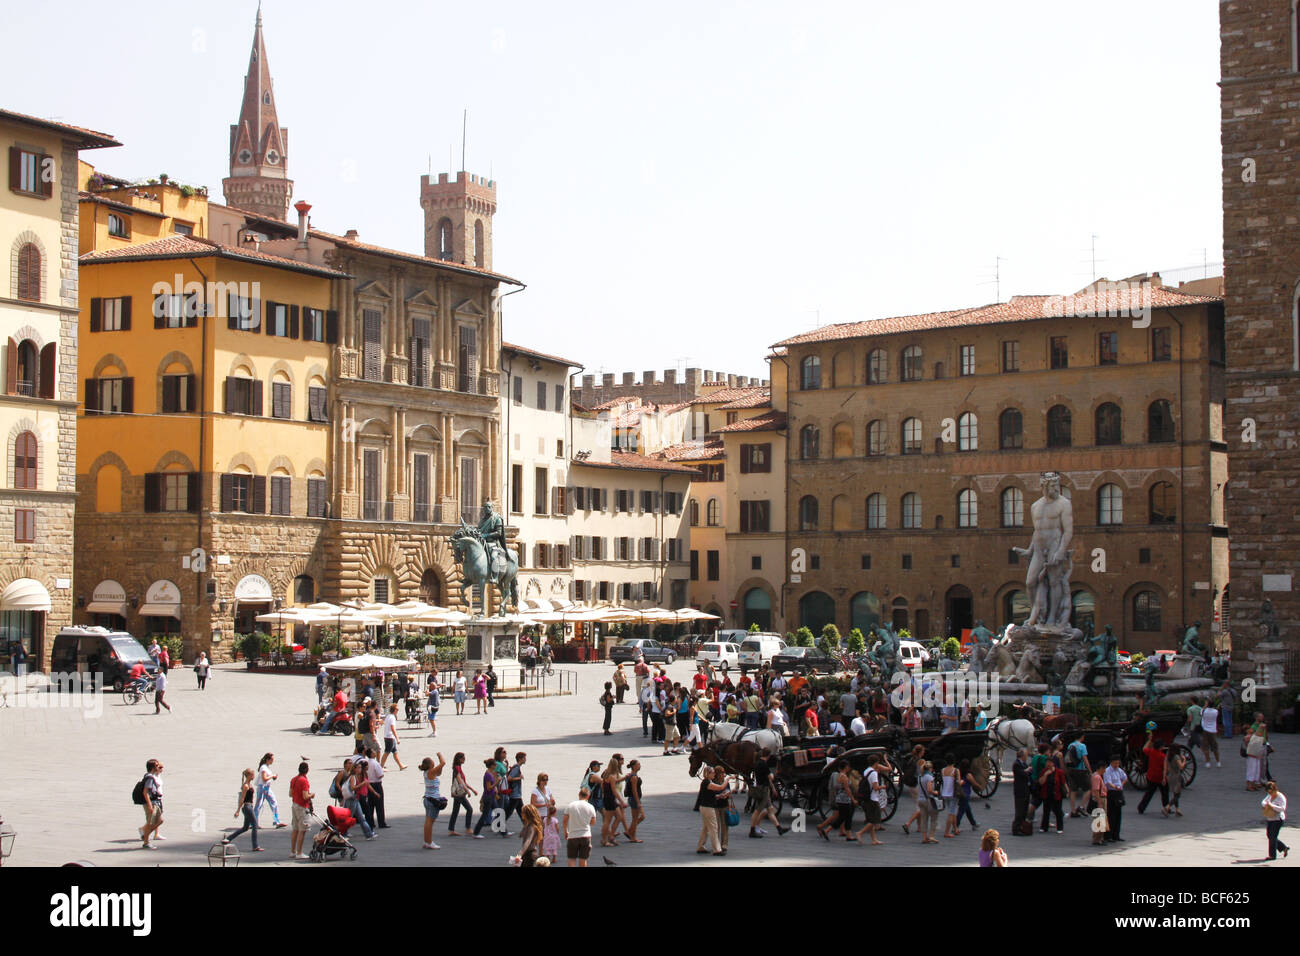 Overview of the Piazza della Signoria in Florenze/Firenze Italy,EU Stock Photo